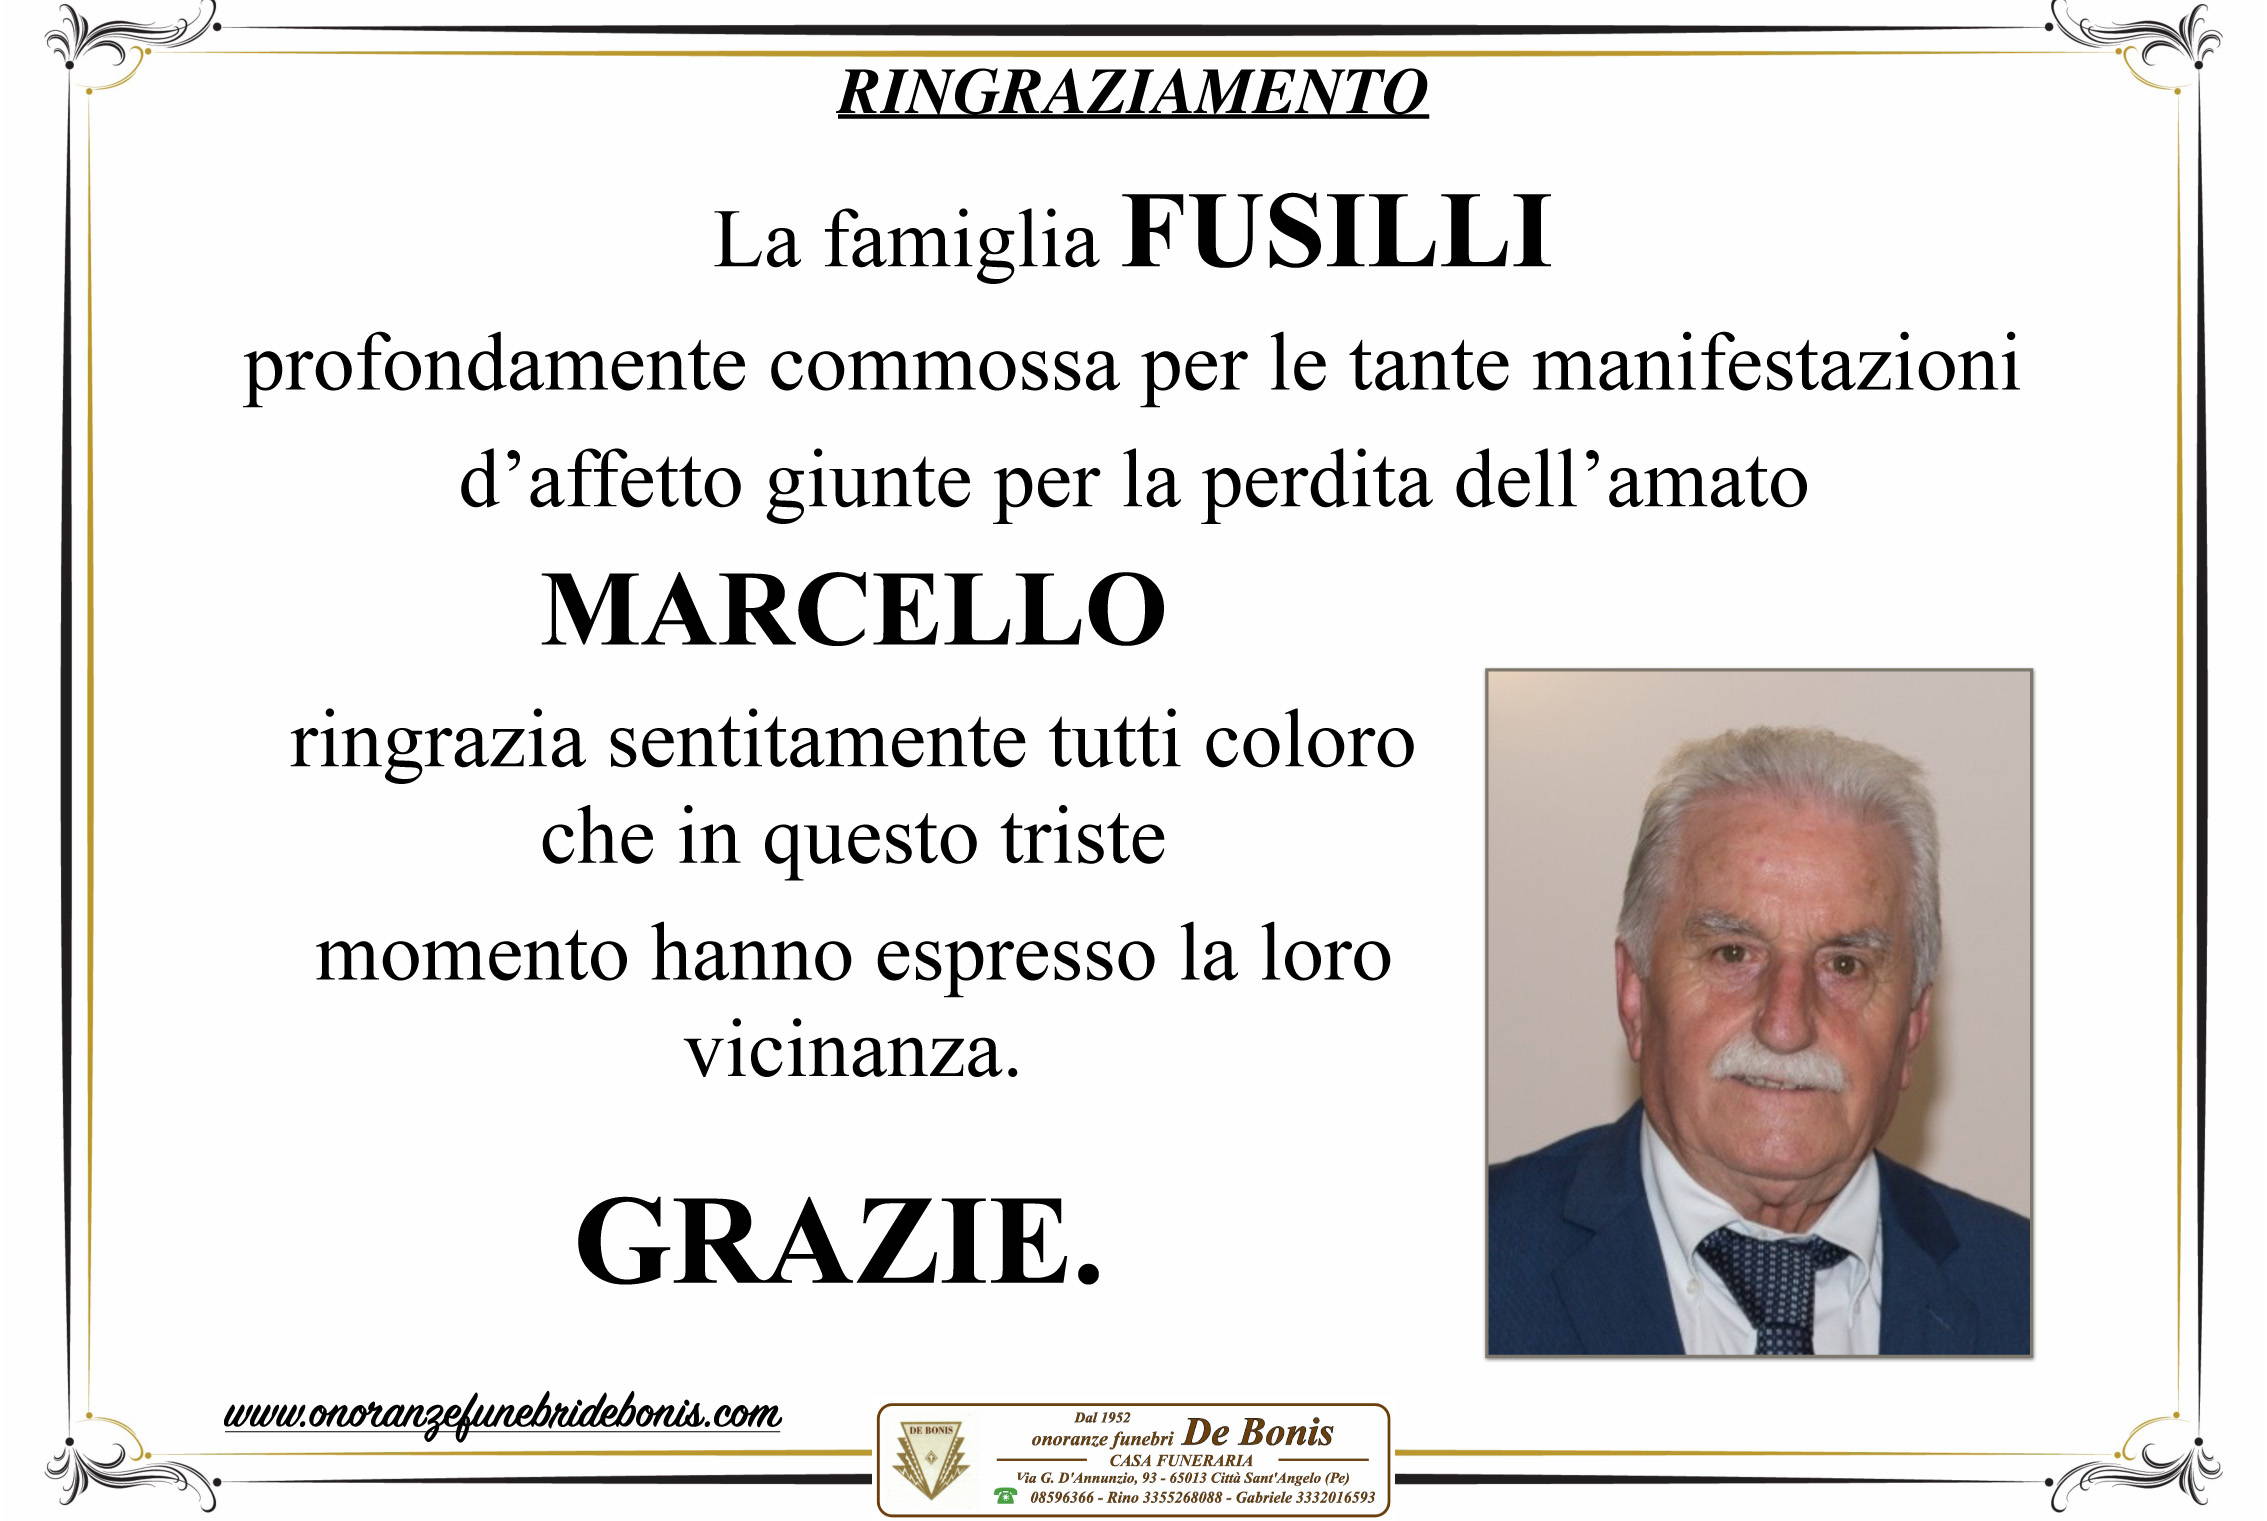 Marcello Fusilli